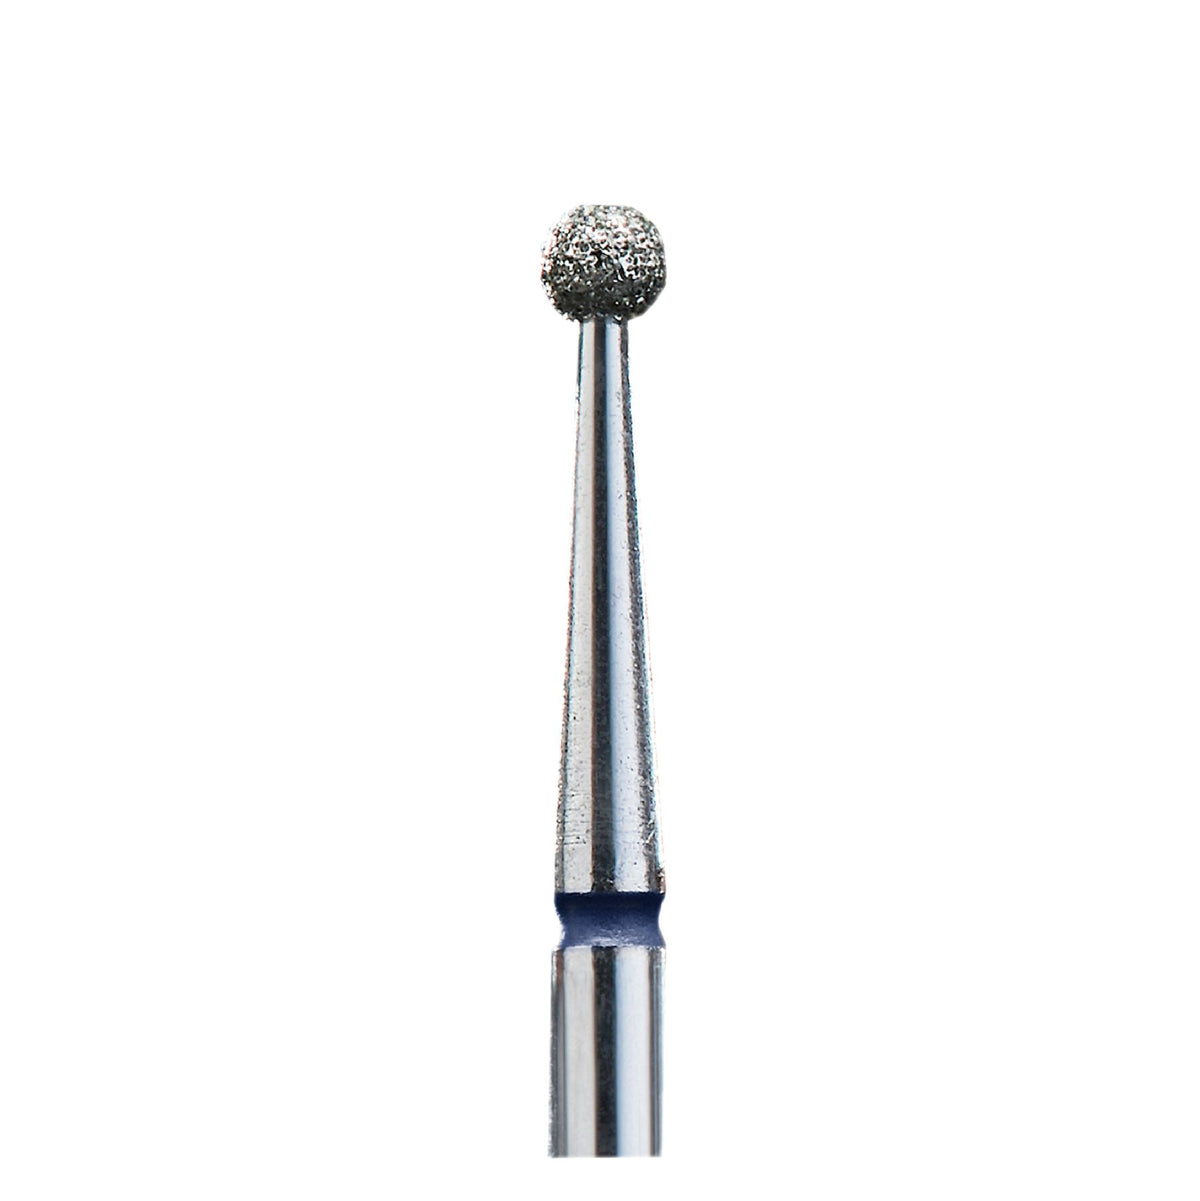 STALEKS DIAMOND NAIL DRILL BIT FA01 "BALL" BLUE, 6 PCS SET 2,7 mm